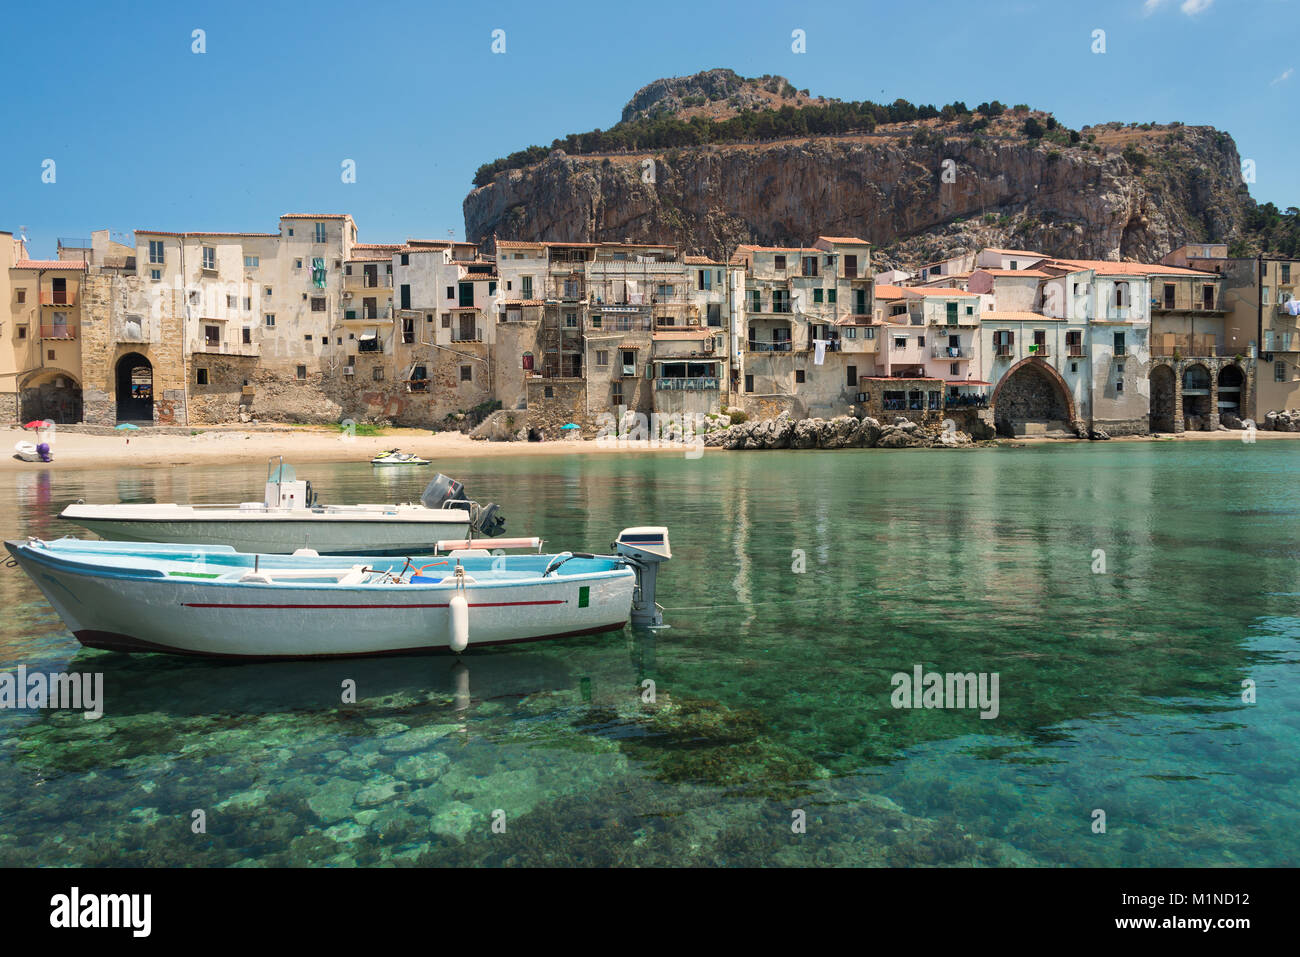 Deux bateaux canot dans les eaux vert émeraude du petit port à la plage de la ville, dans la vieille ville de Cefalu près de Palerme en Sicile, Italie. Banque D'Images